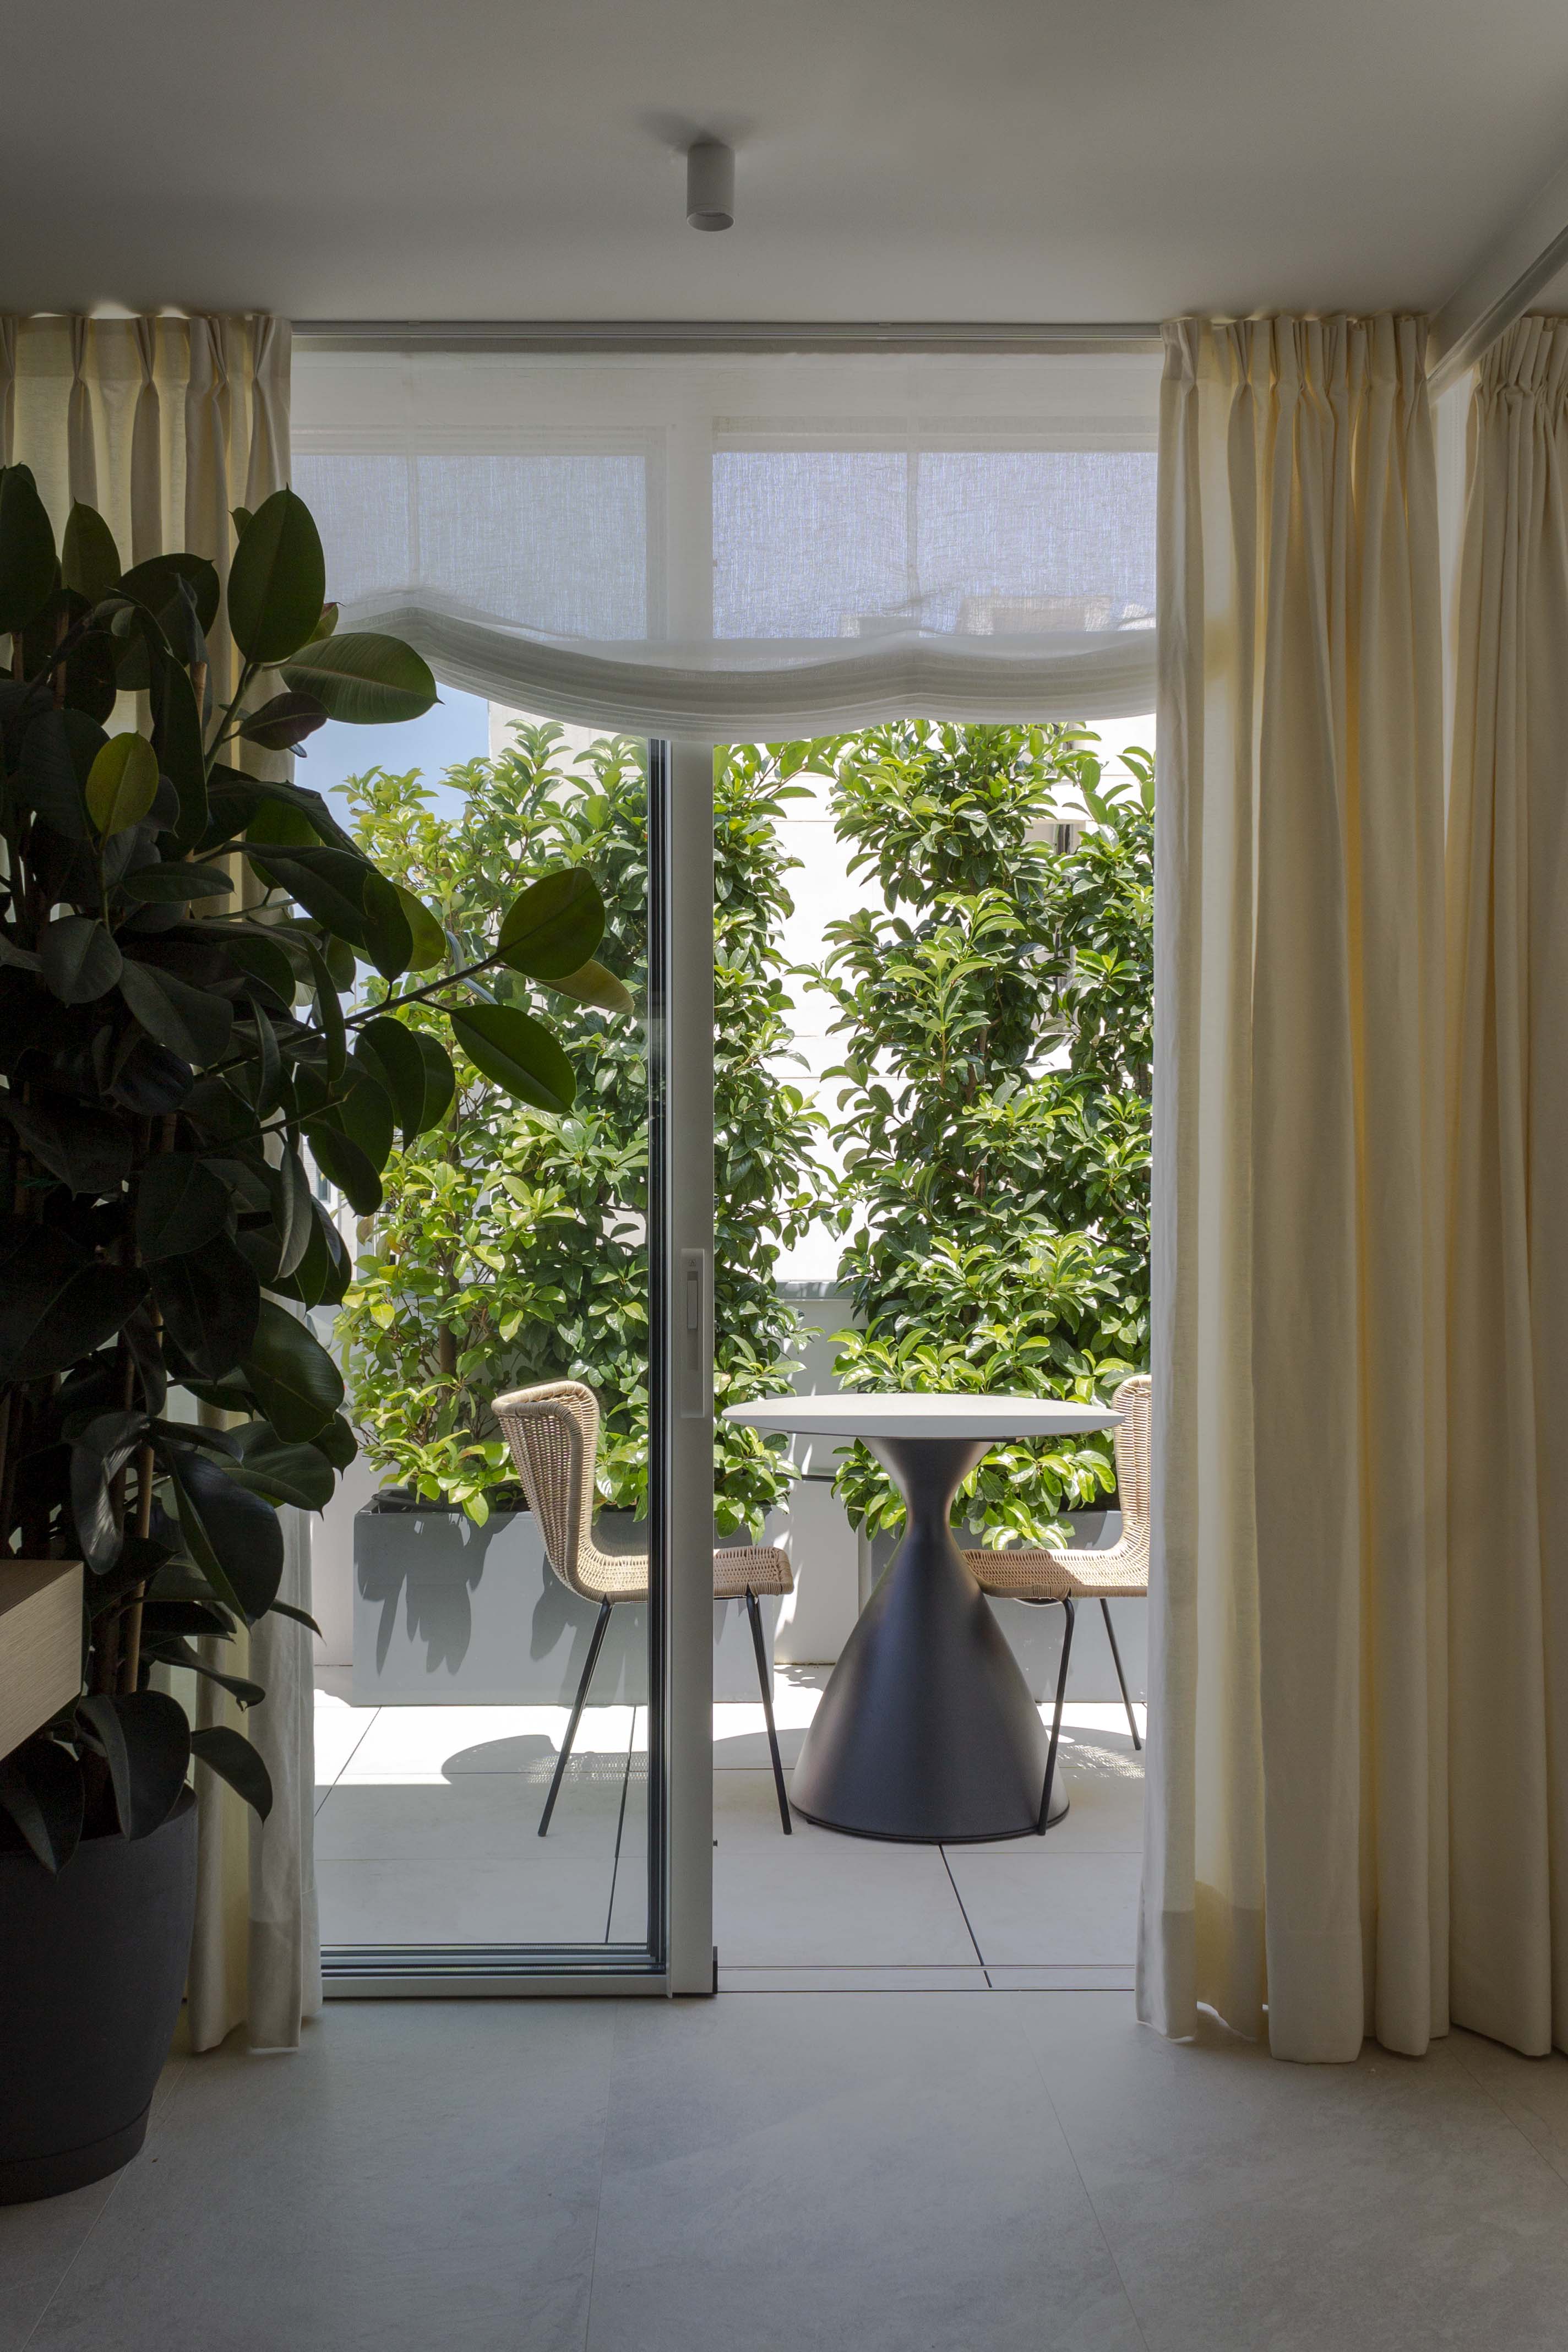 Vista de terraza desde despacho, decorada con mobiliario para exterior y vegetación alta para más privacidad. Cortinas de suelo a techo y estores